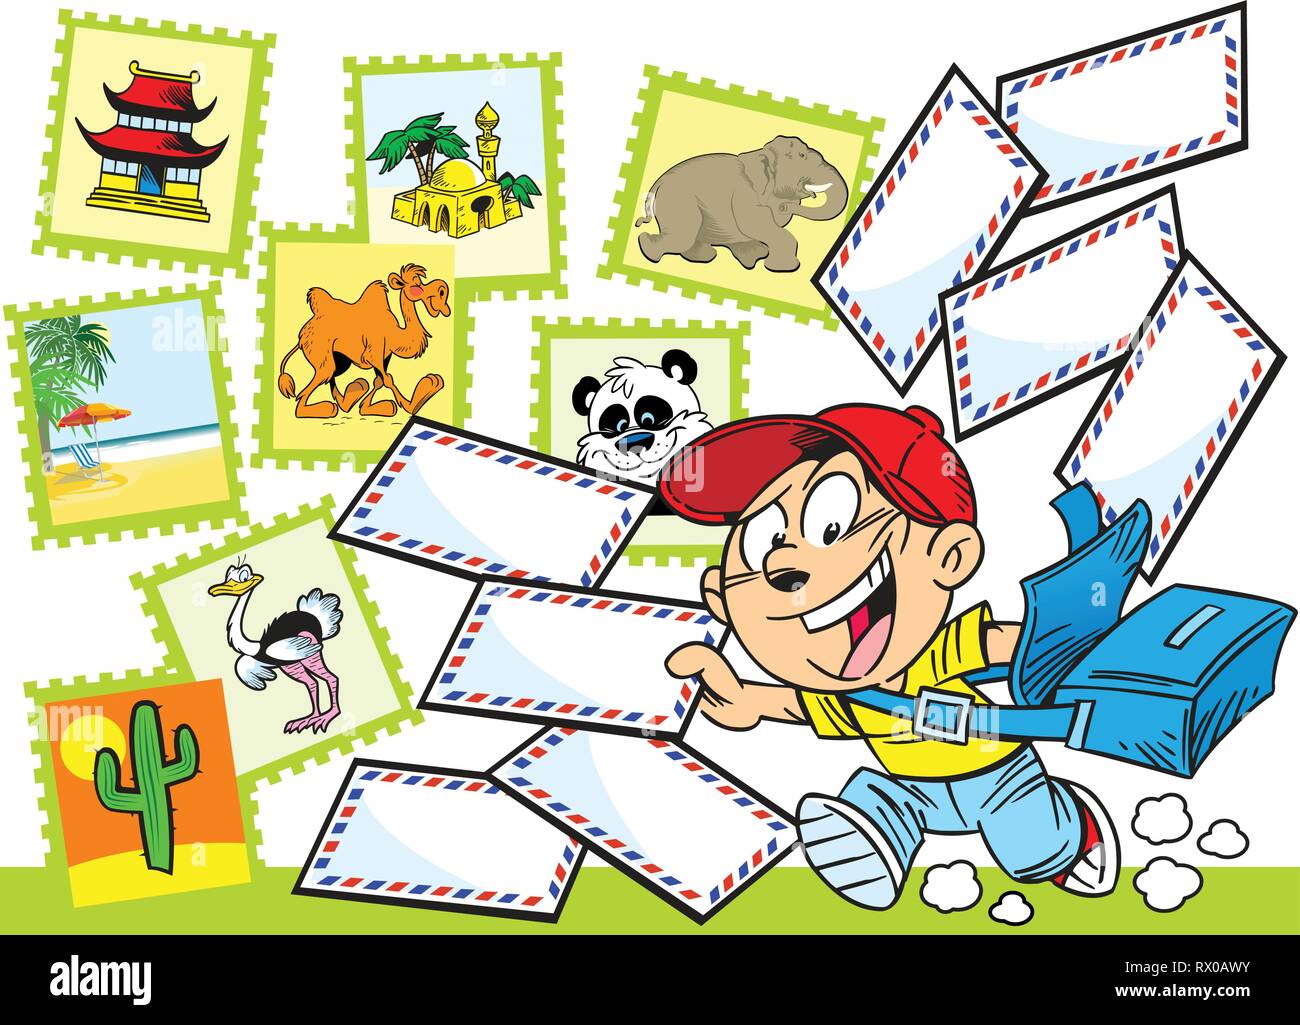 La figura mostra il ragazzo postino che recapita le lettere. Illustrazione fatta in stile cartoon. Illustrazione Vettoriale